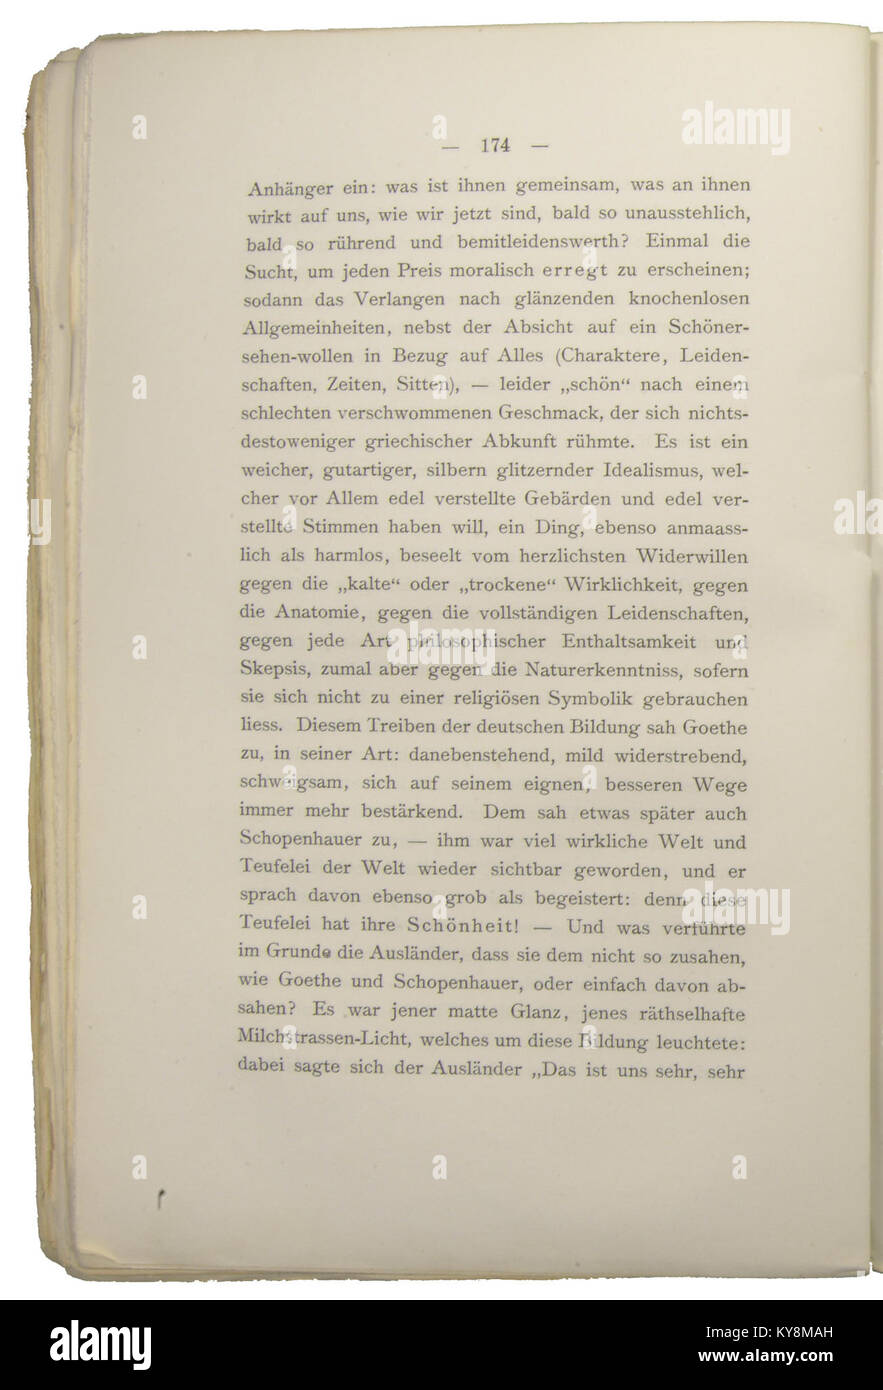 Nietzsche - Morgenröthe, 1881, p. 174 Stock Photo